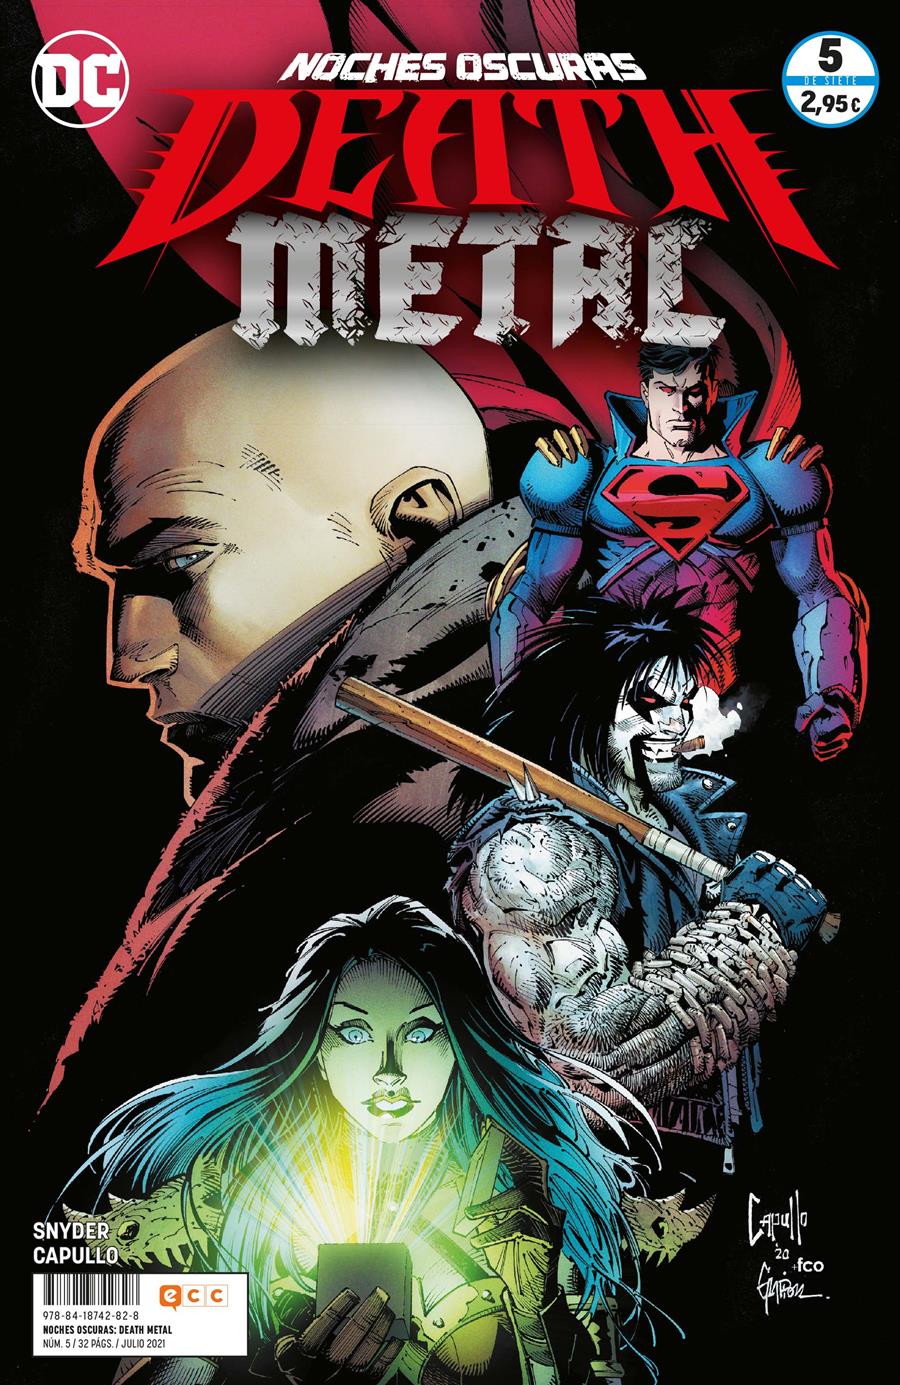 Noches oscuras: Death Metal núm. 05 de 7 | N0721-ECC15 | Greg Capullo / Scott Snyder | Terra de Còmic - Tu tienda de cómics online especializada en cómics, manga y merchandising